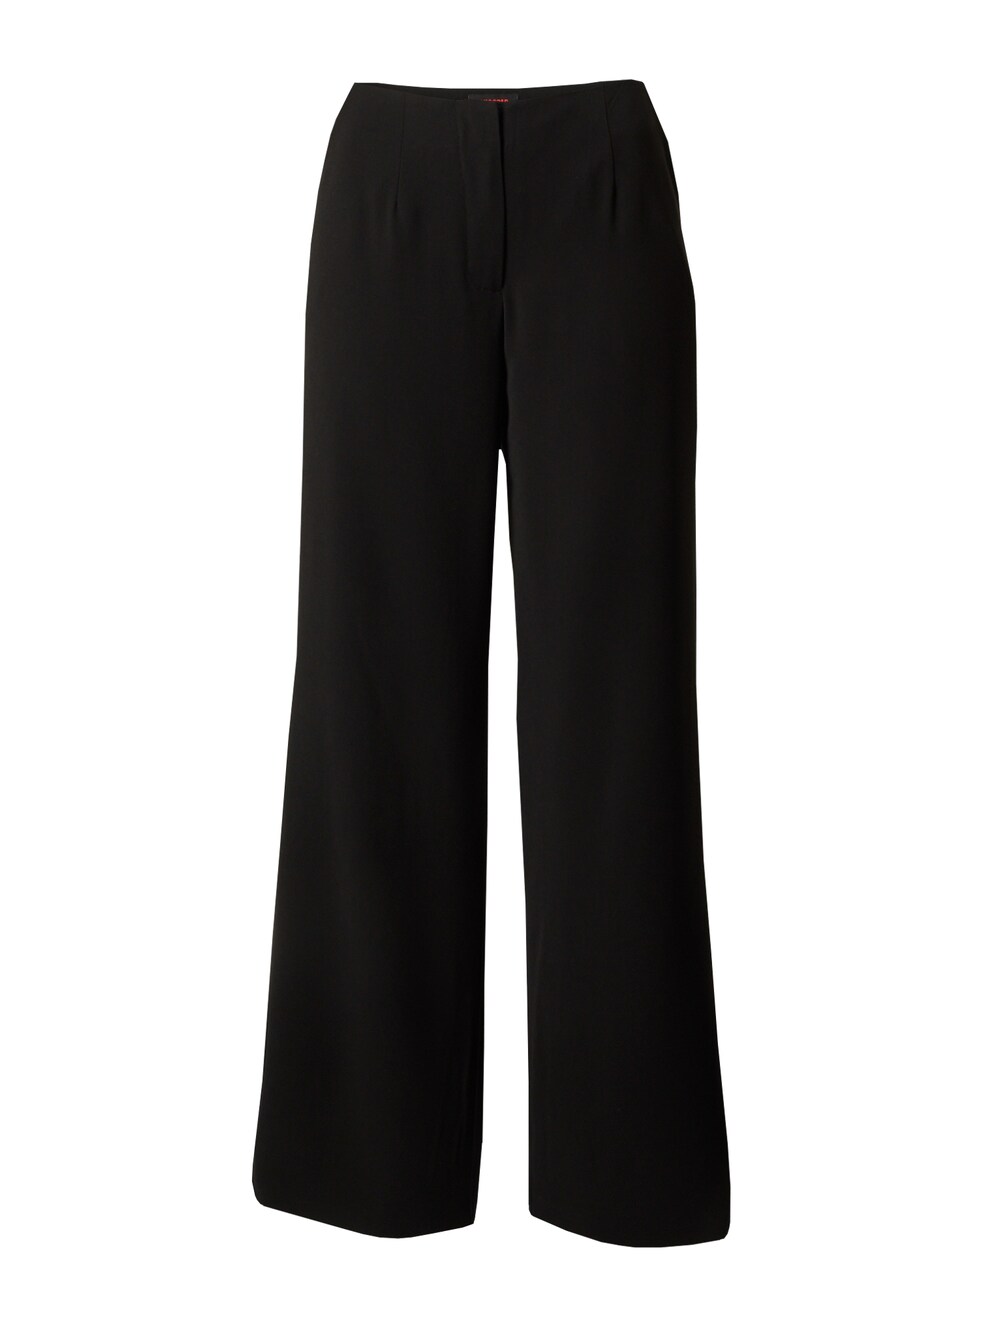 Широкие брюки со складками спереди Misspap, черный широкие брюки со складками misspap бежевый